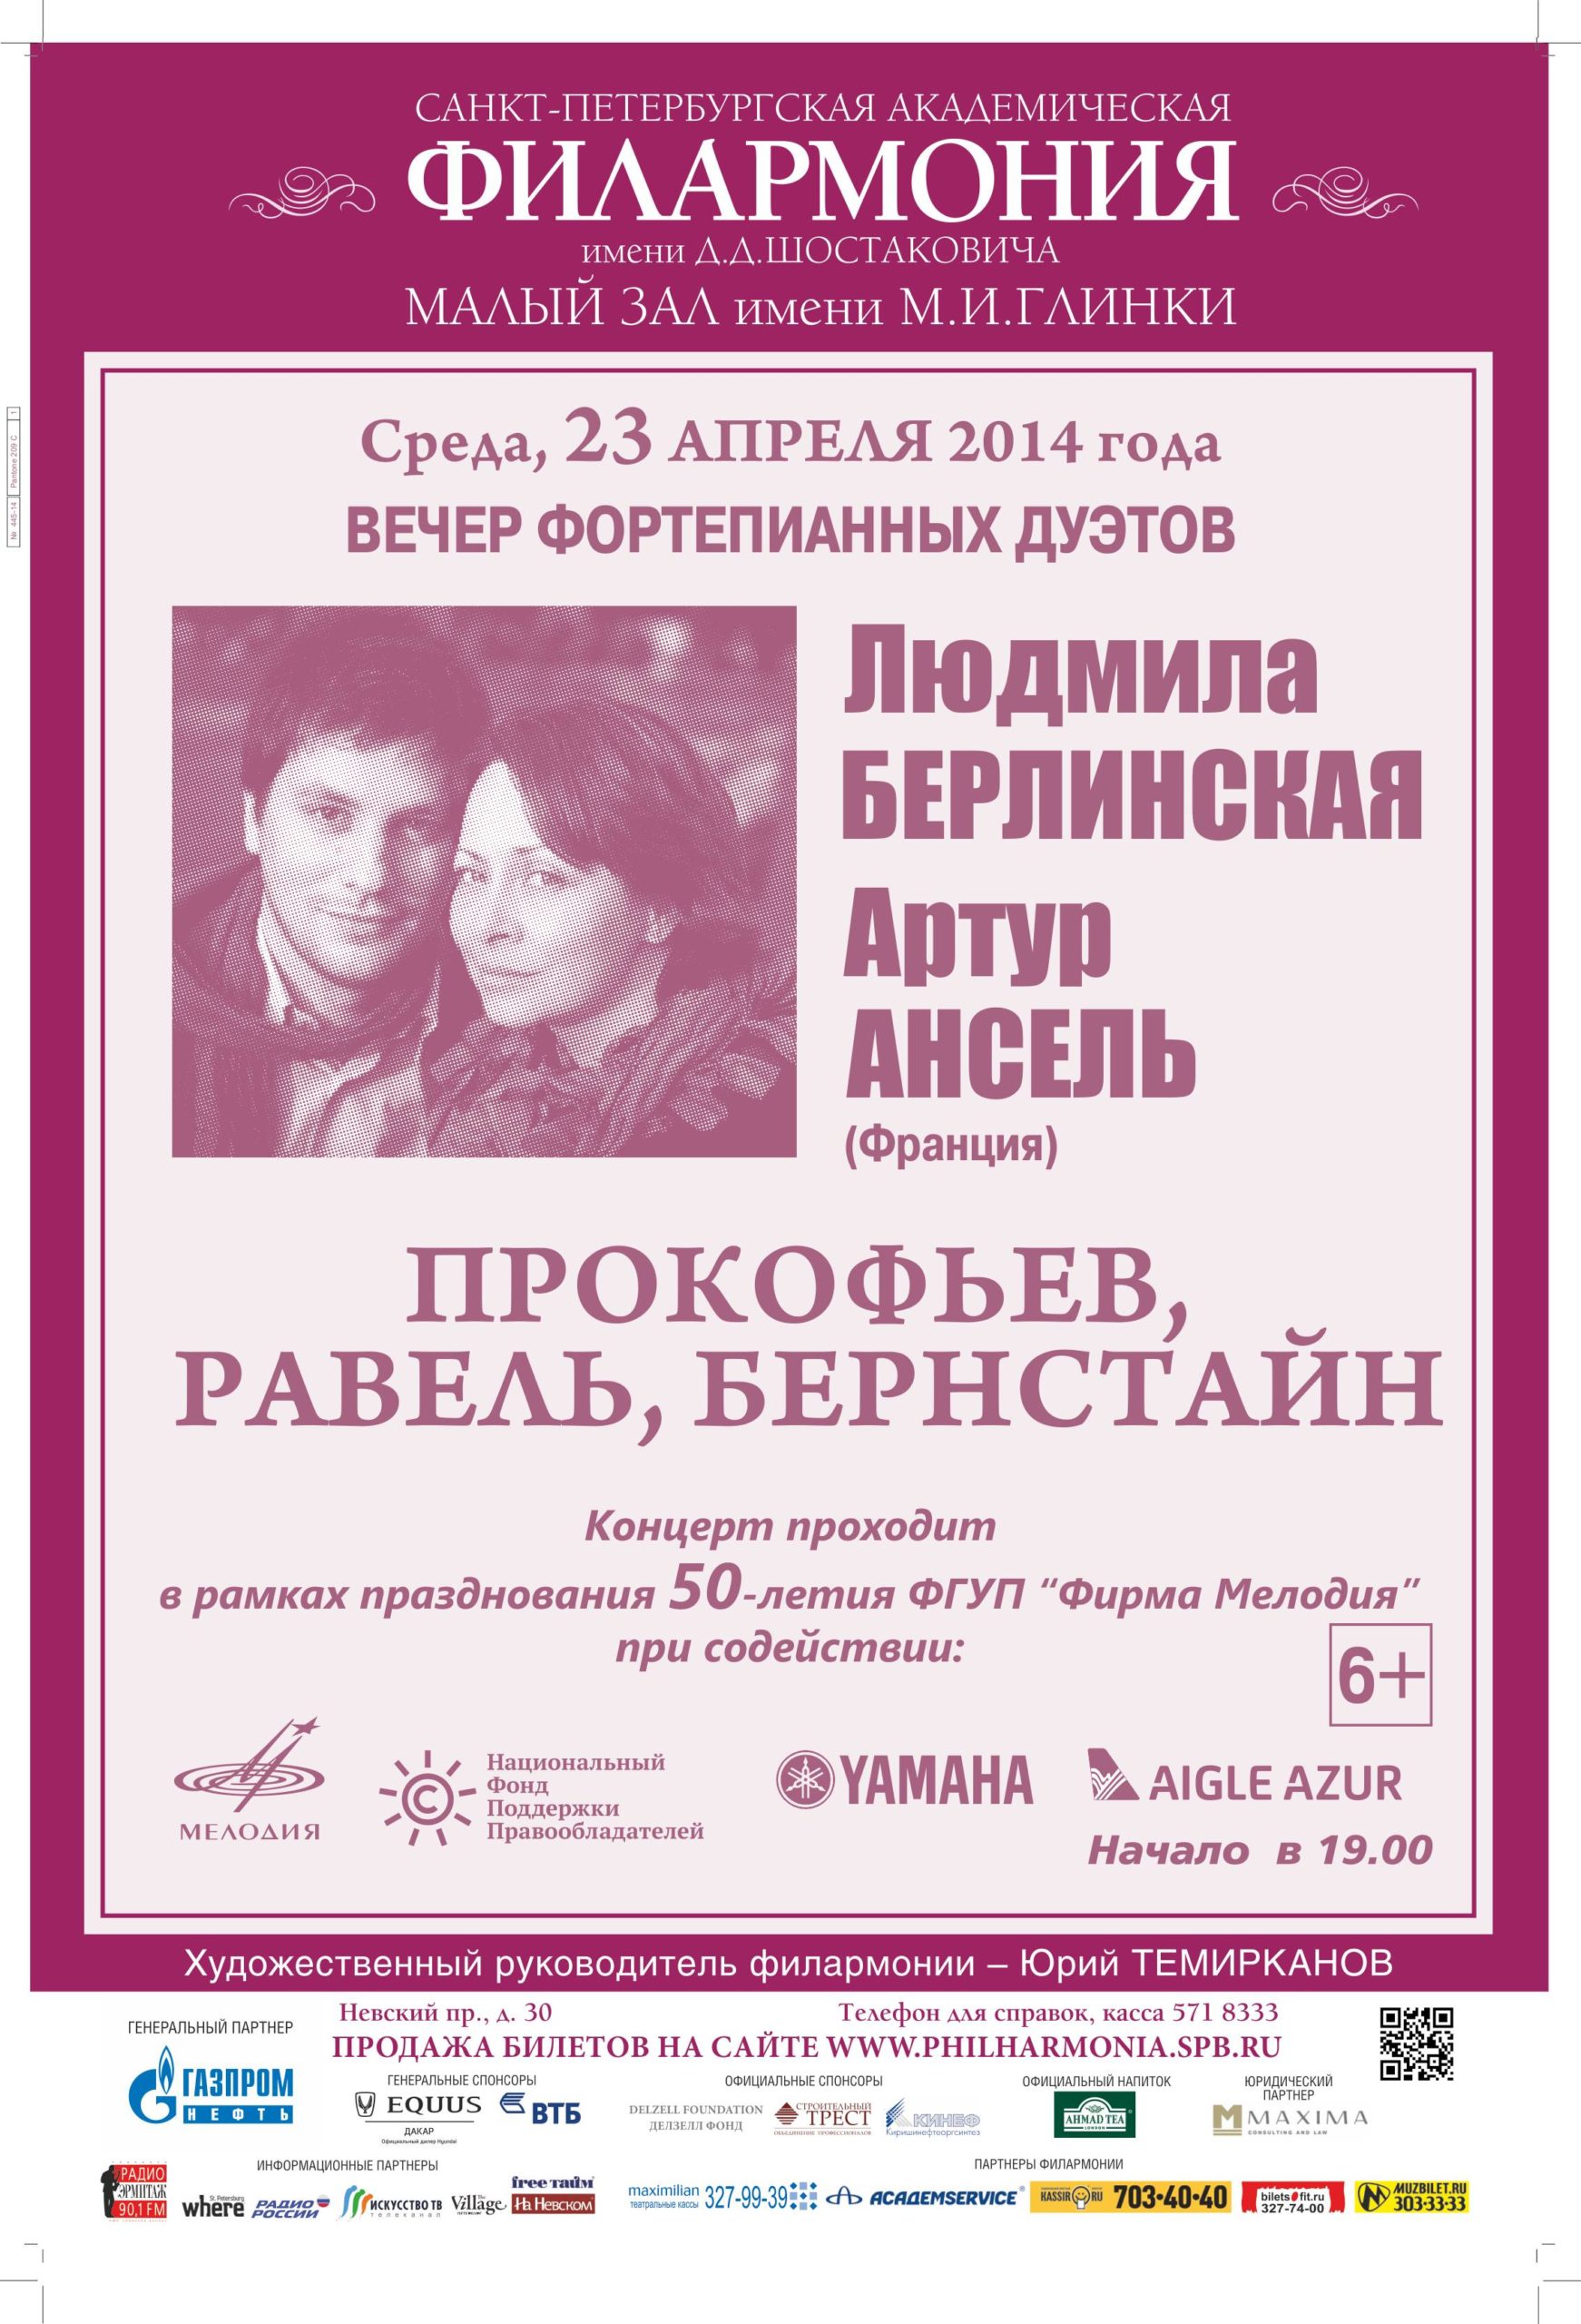 23 апреля при содействии НФПП пройдет концерт фортепианного дуэта Берлинская – Ансель в Санкт-Петербурге